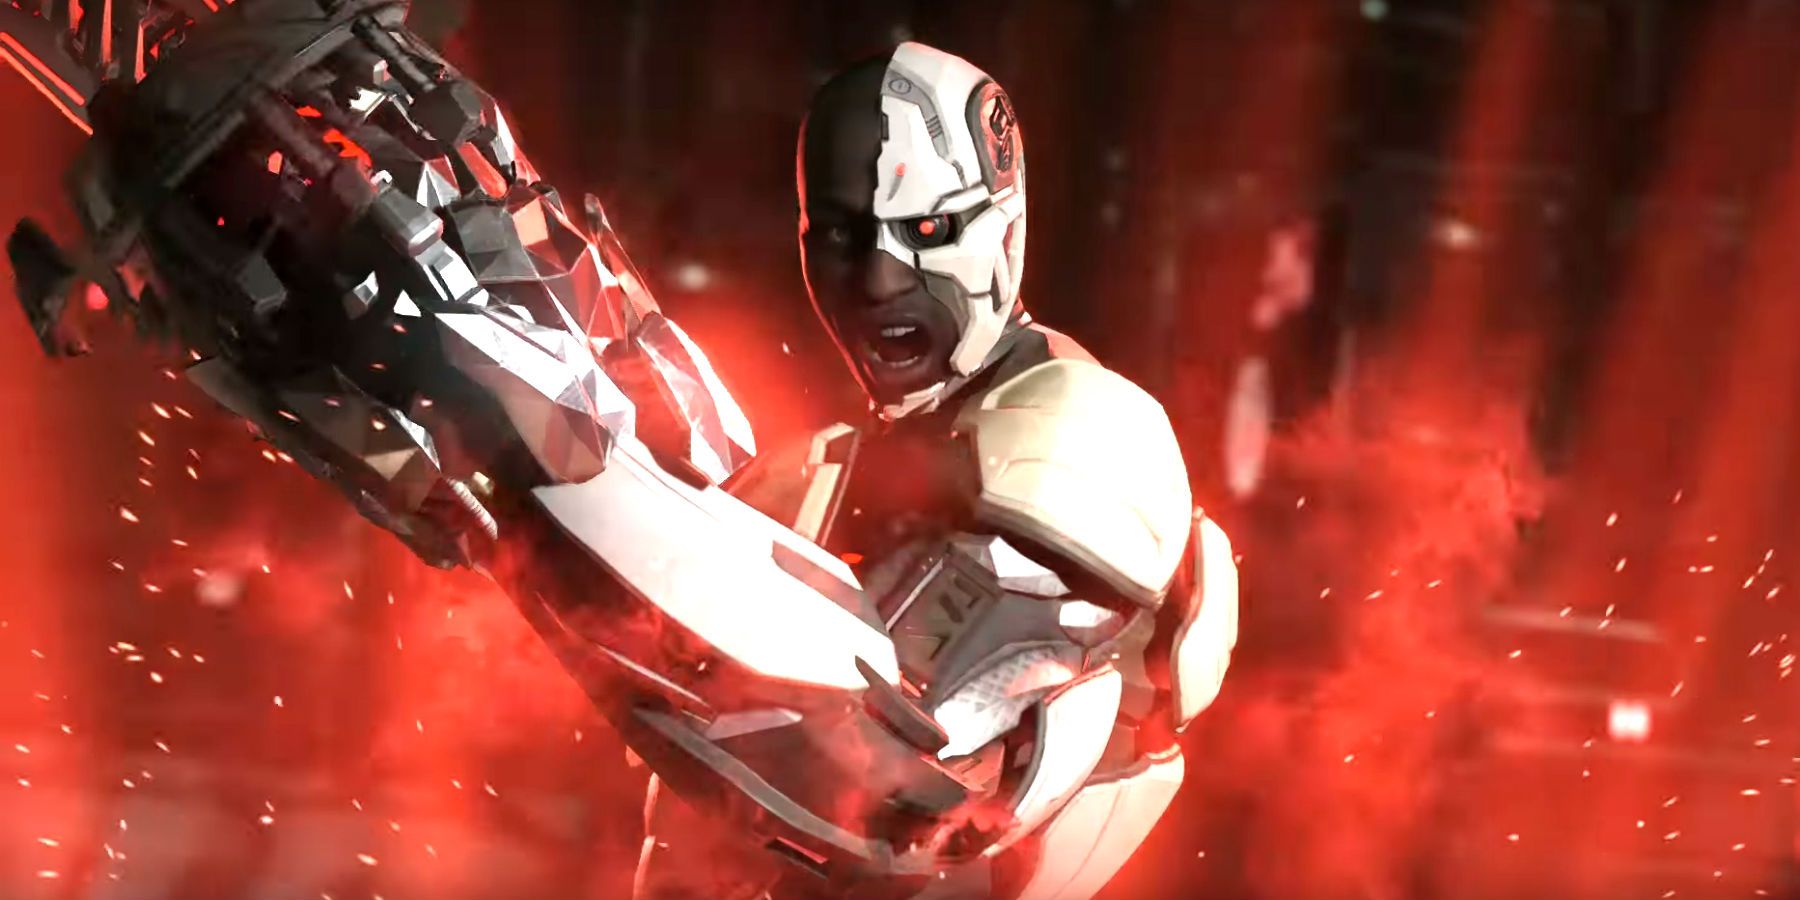 Injustice 2 - Justice League Cyborg armor